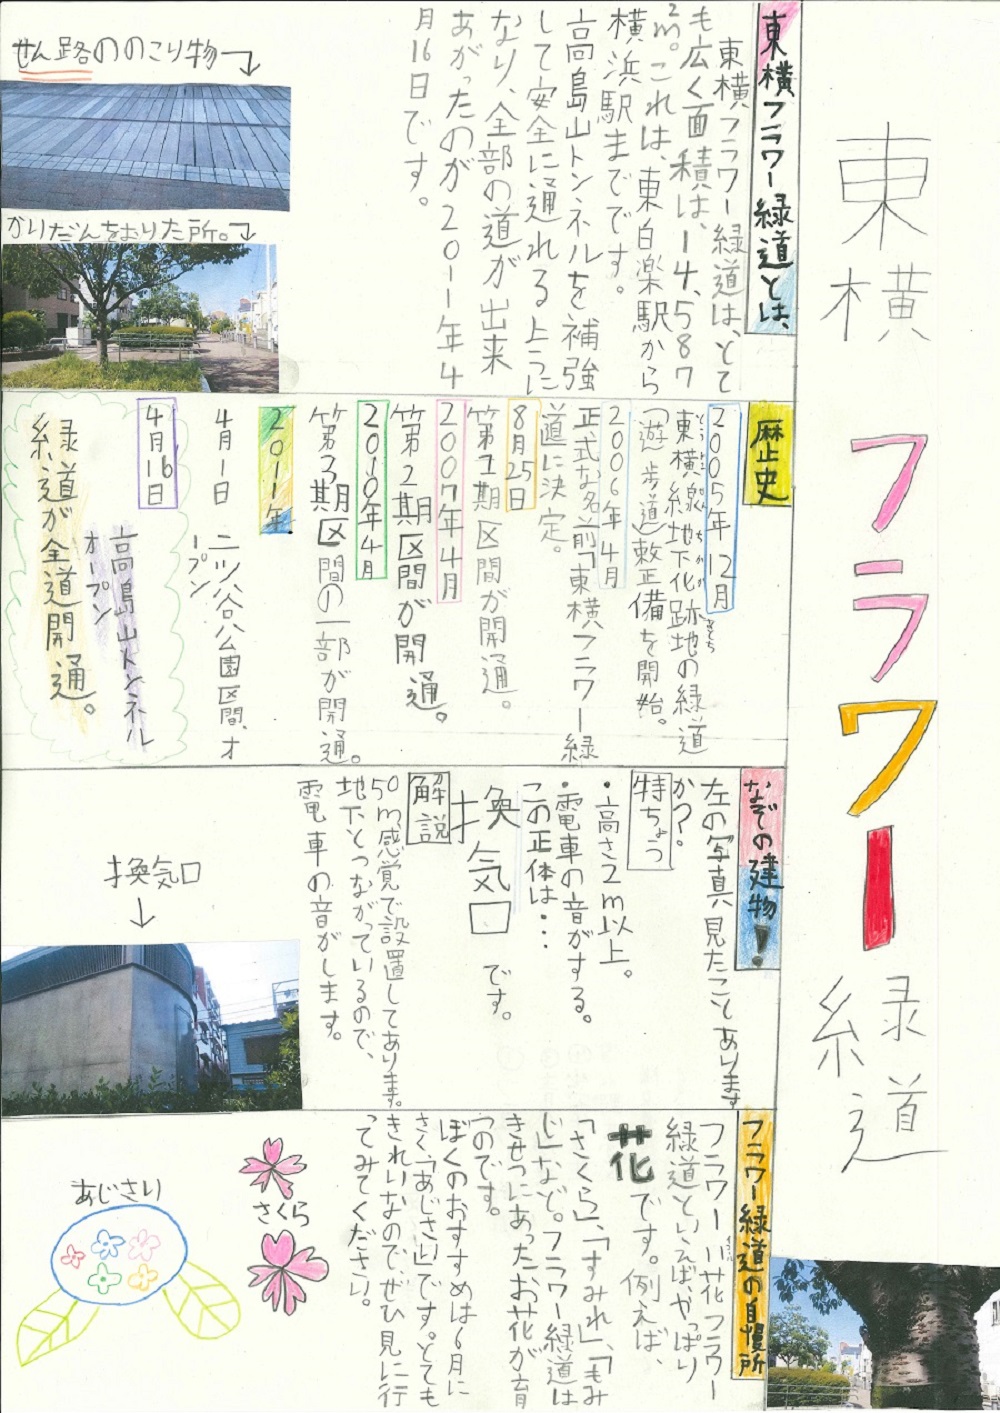 Tartaruga Prêmio de Taro "Toyoko florescem "jornal de parque de cidade